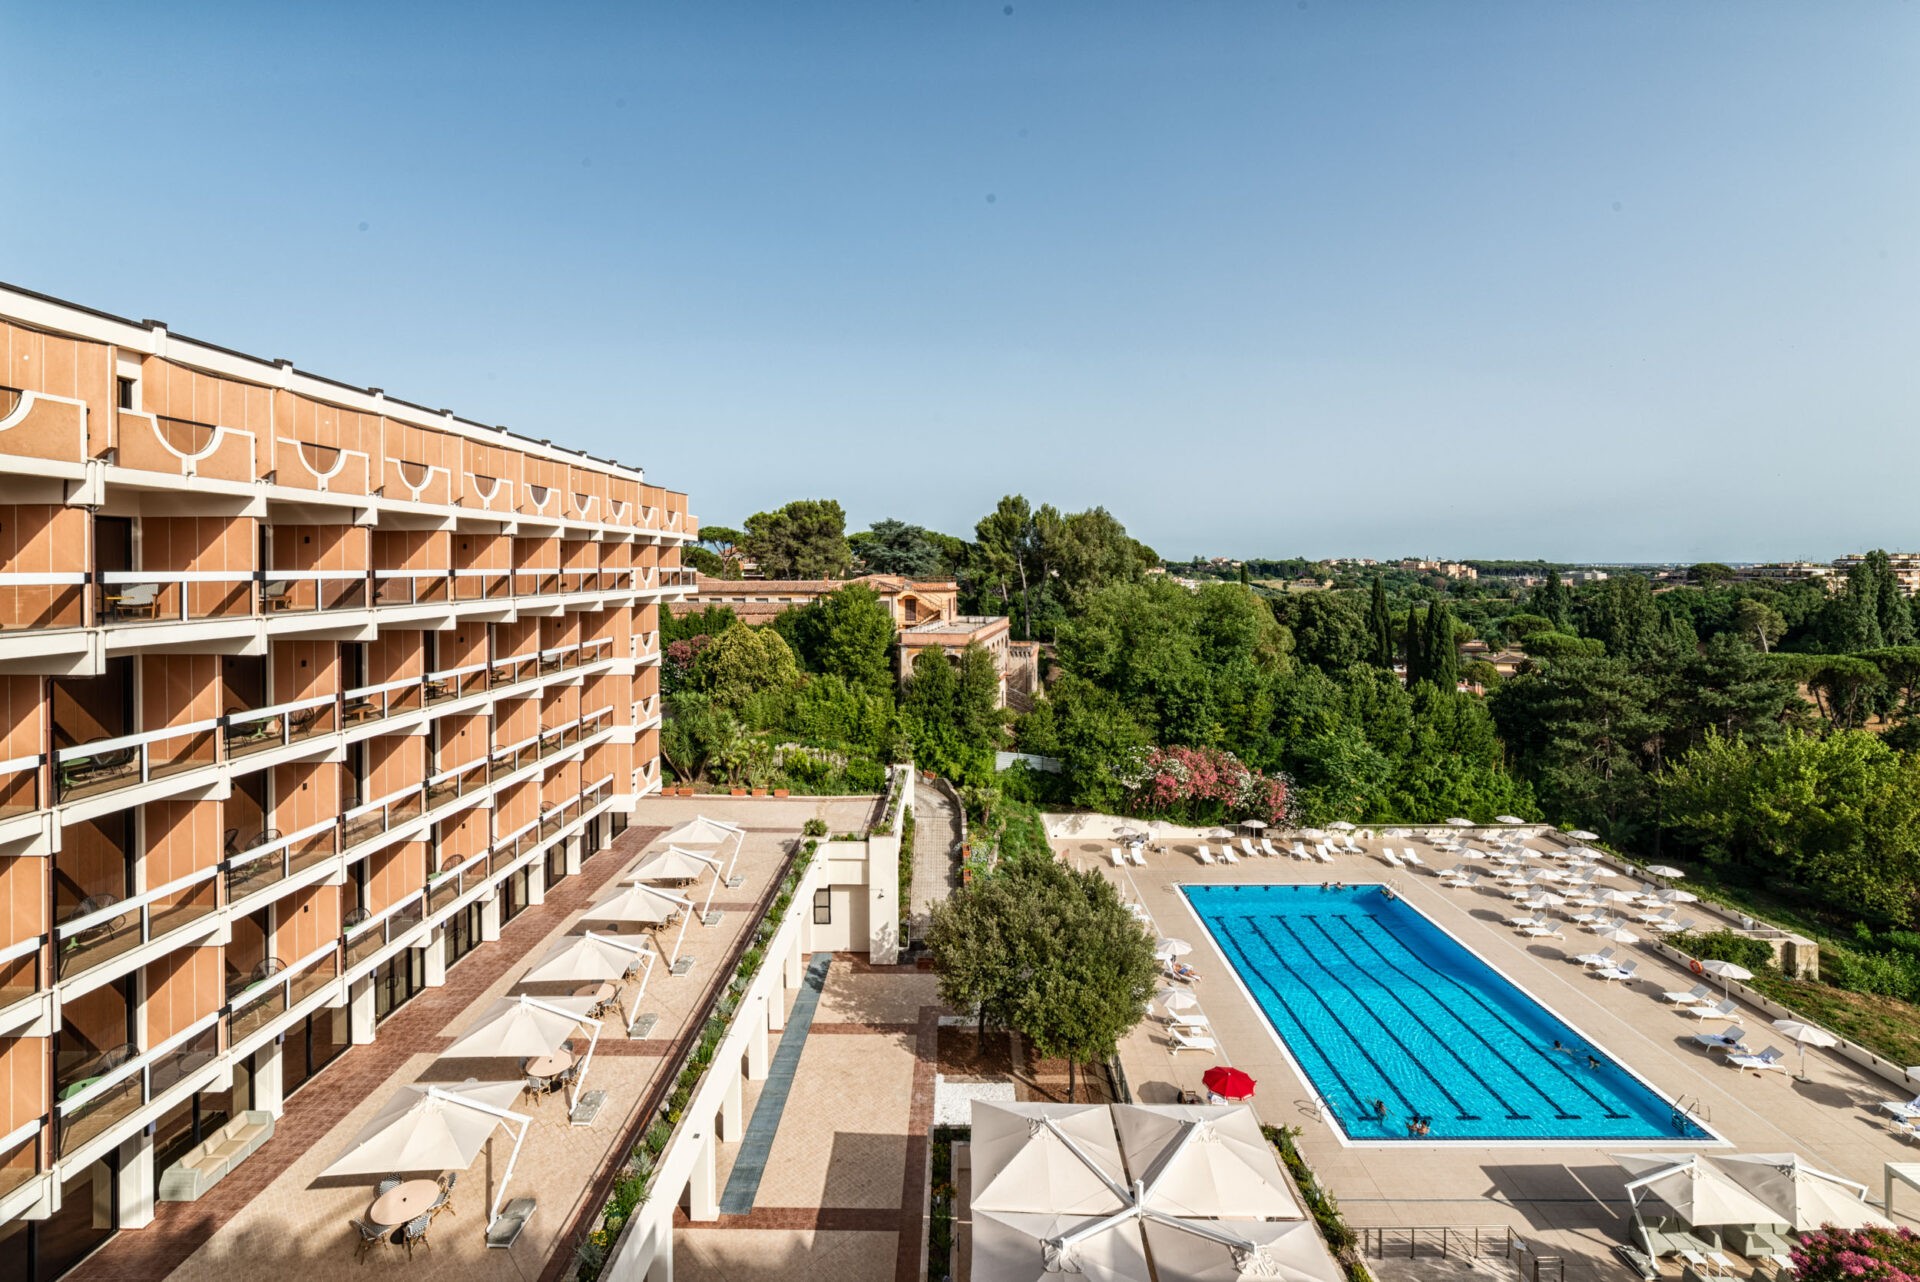 HOTEL Villa Pamphili